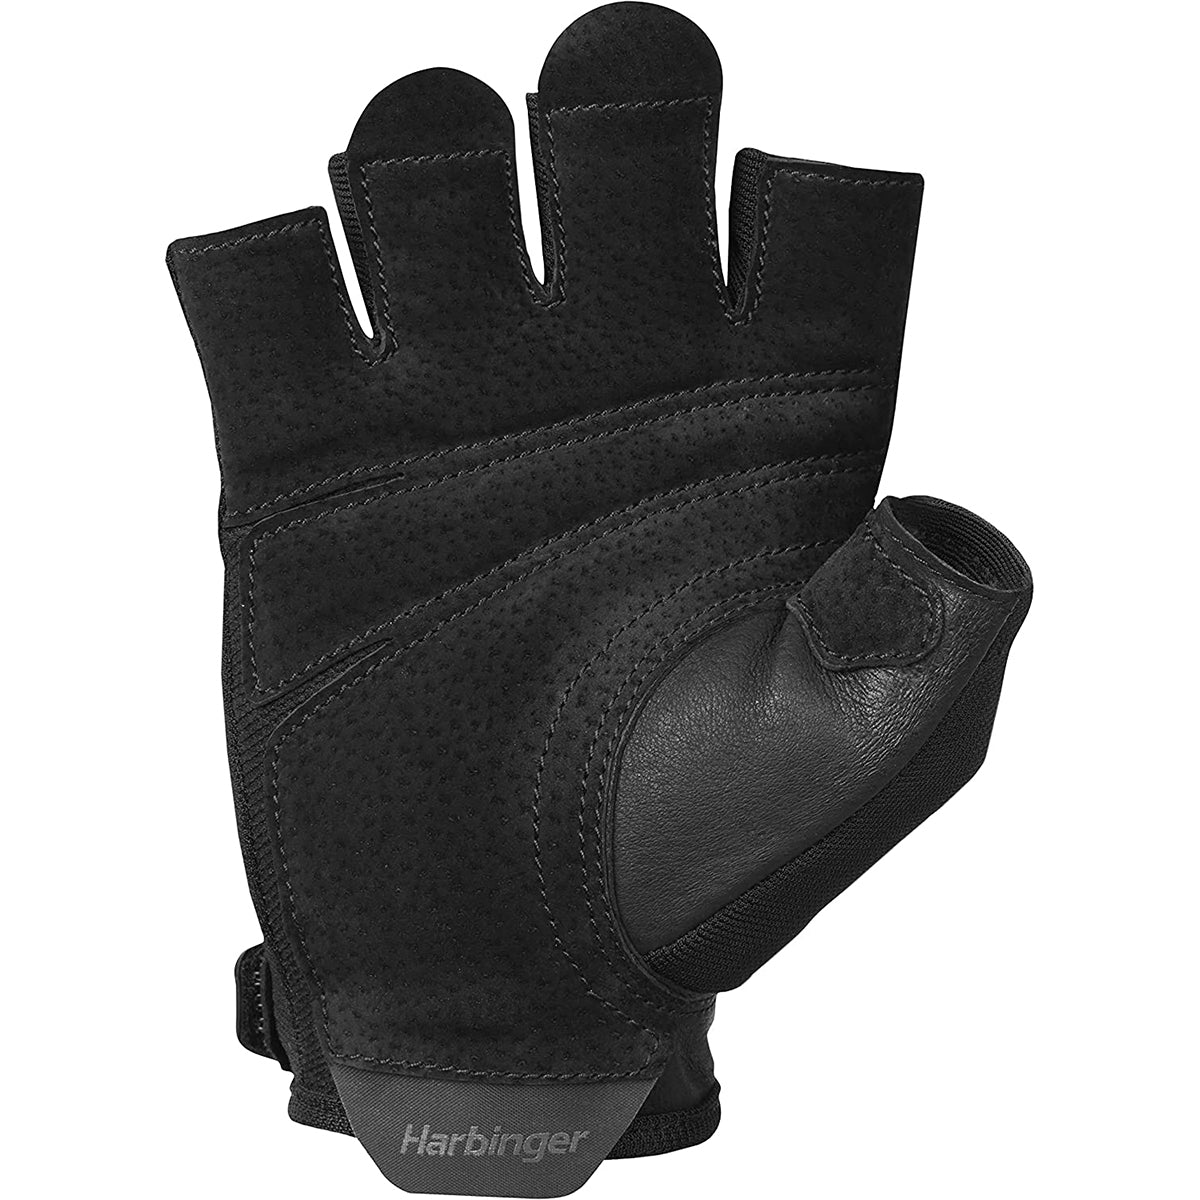 Harbinger Unisex Power Weight Lifting Gloves 2.0 - Black Harbinger